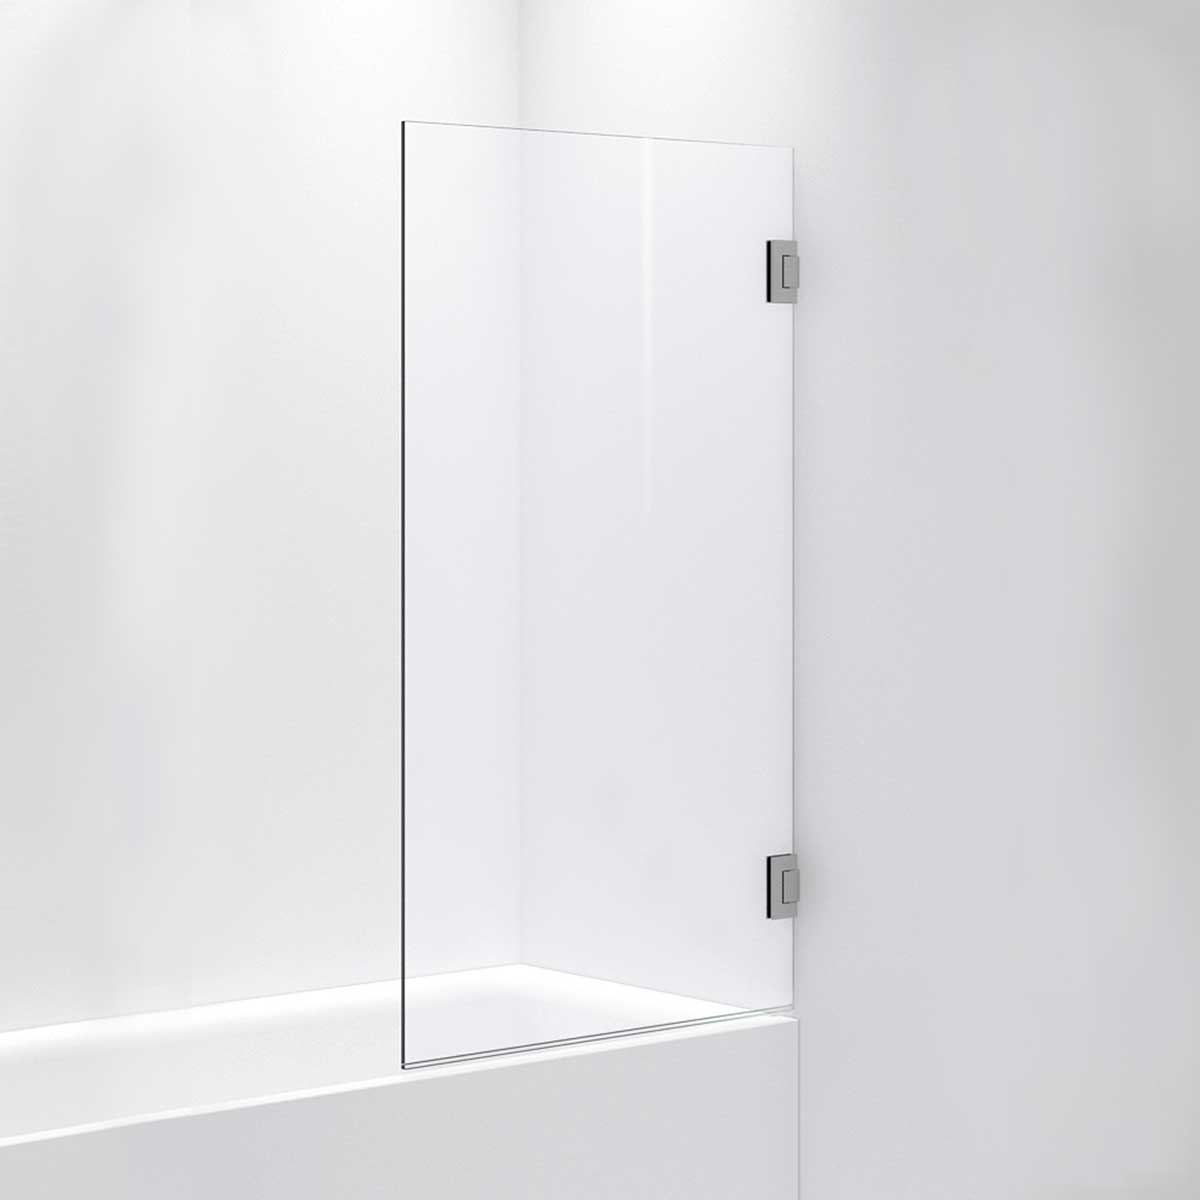 INR Iconic Nordic Rooms Badekarvegg ARC 17 Måltilpasset Brushed Stainless / Opal Klart Glass Badekarvegg